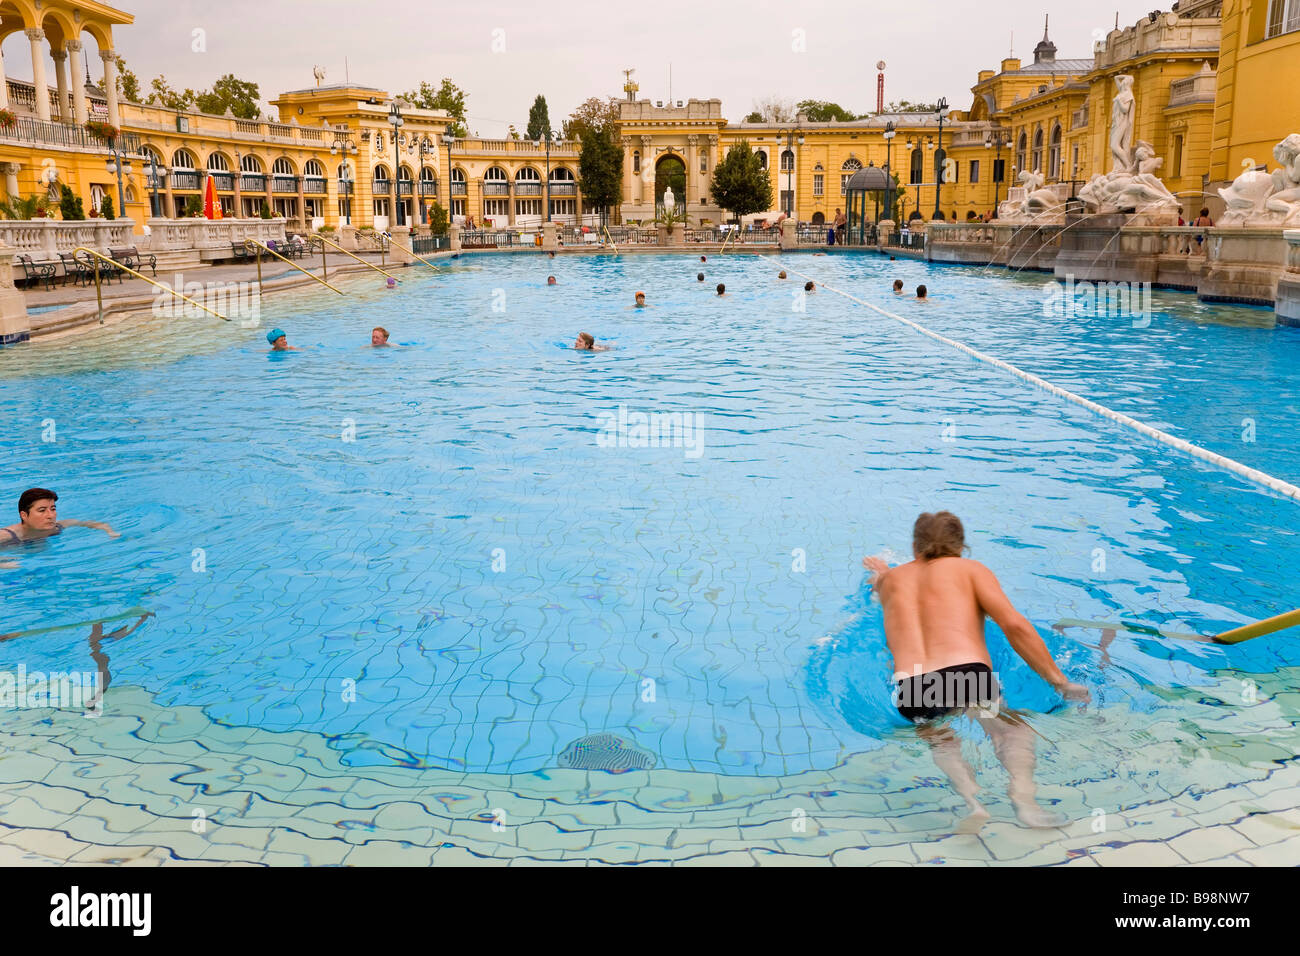 Les piscines des bains thermaux Széchenyi Budapest Hongrie Banque D'Images